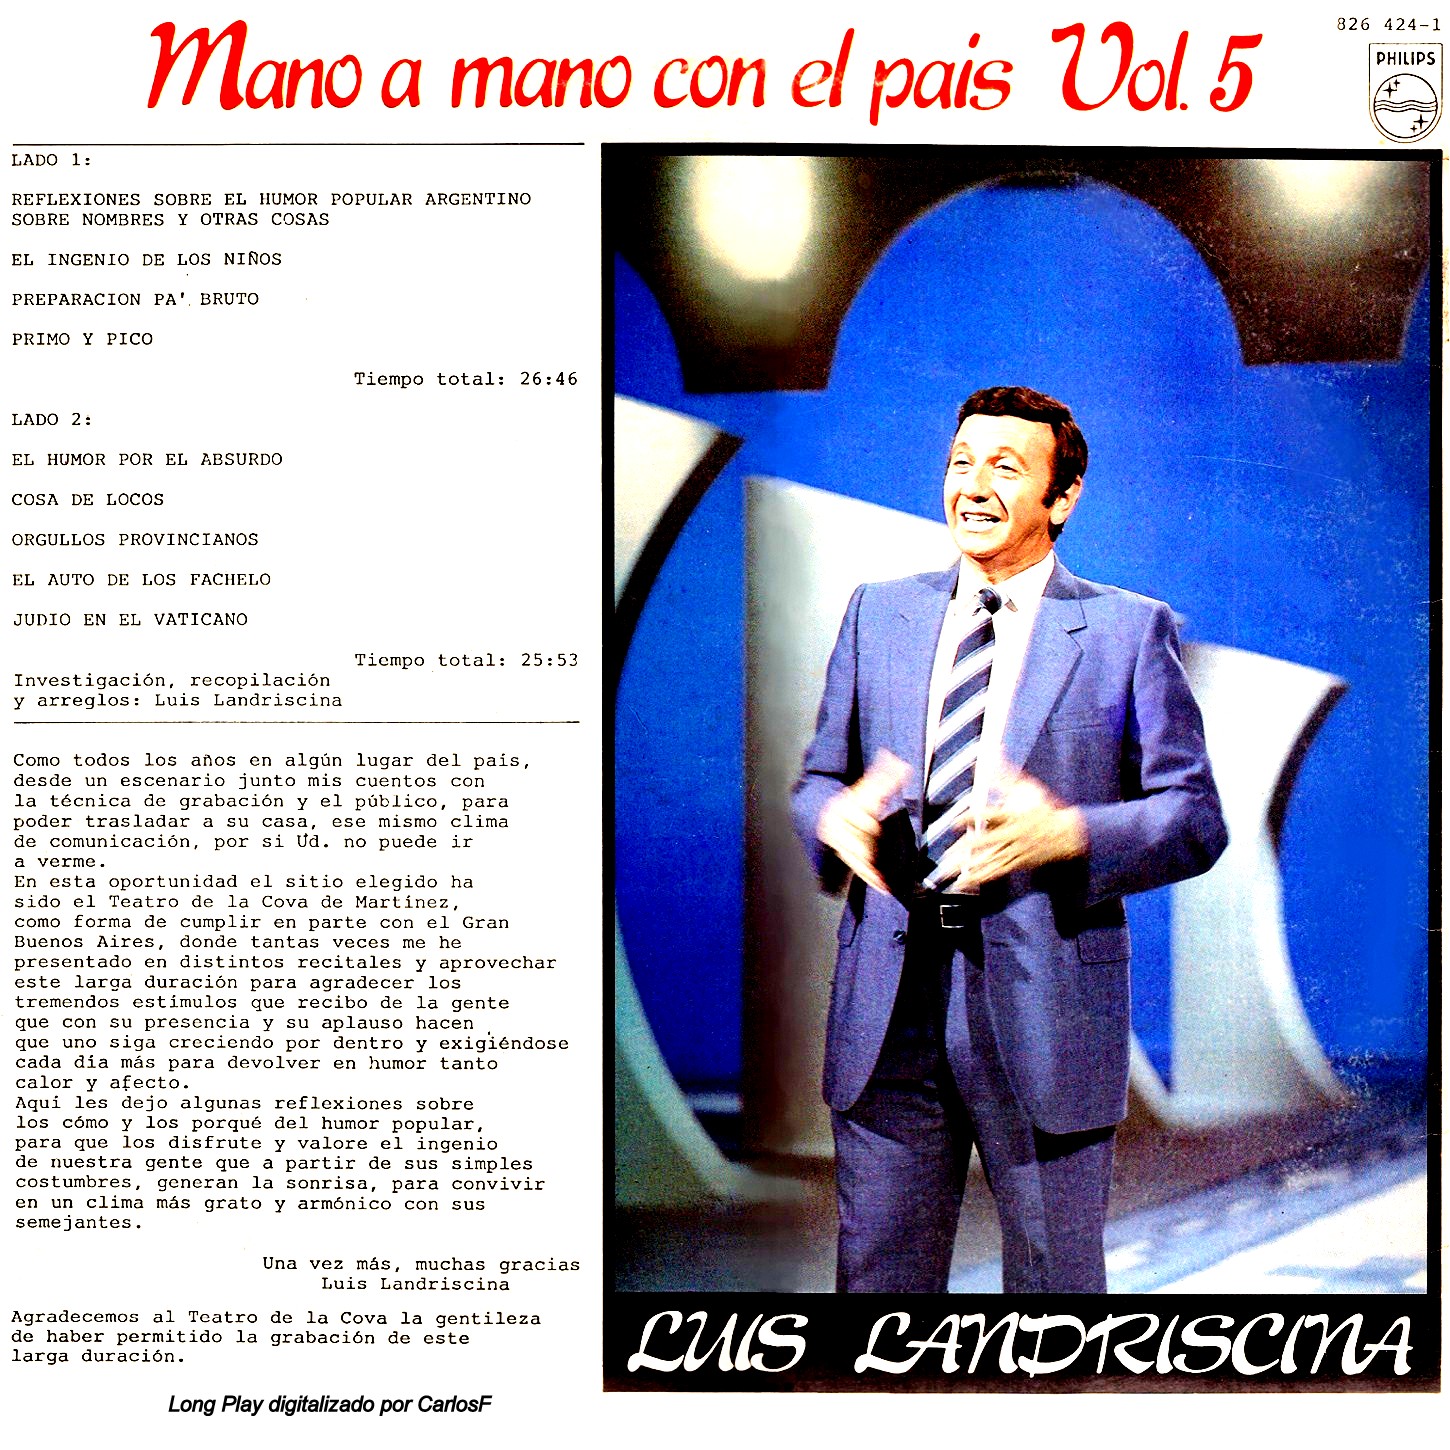 Discografia Luis Landriscina Torrent